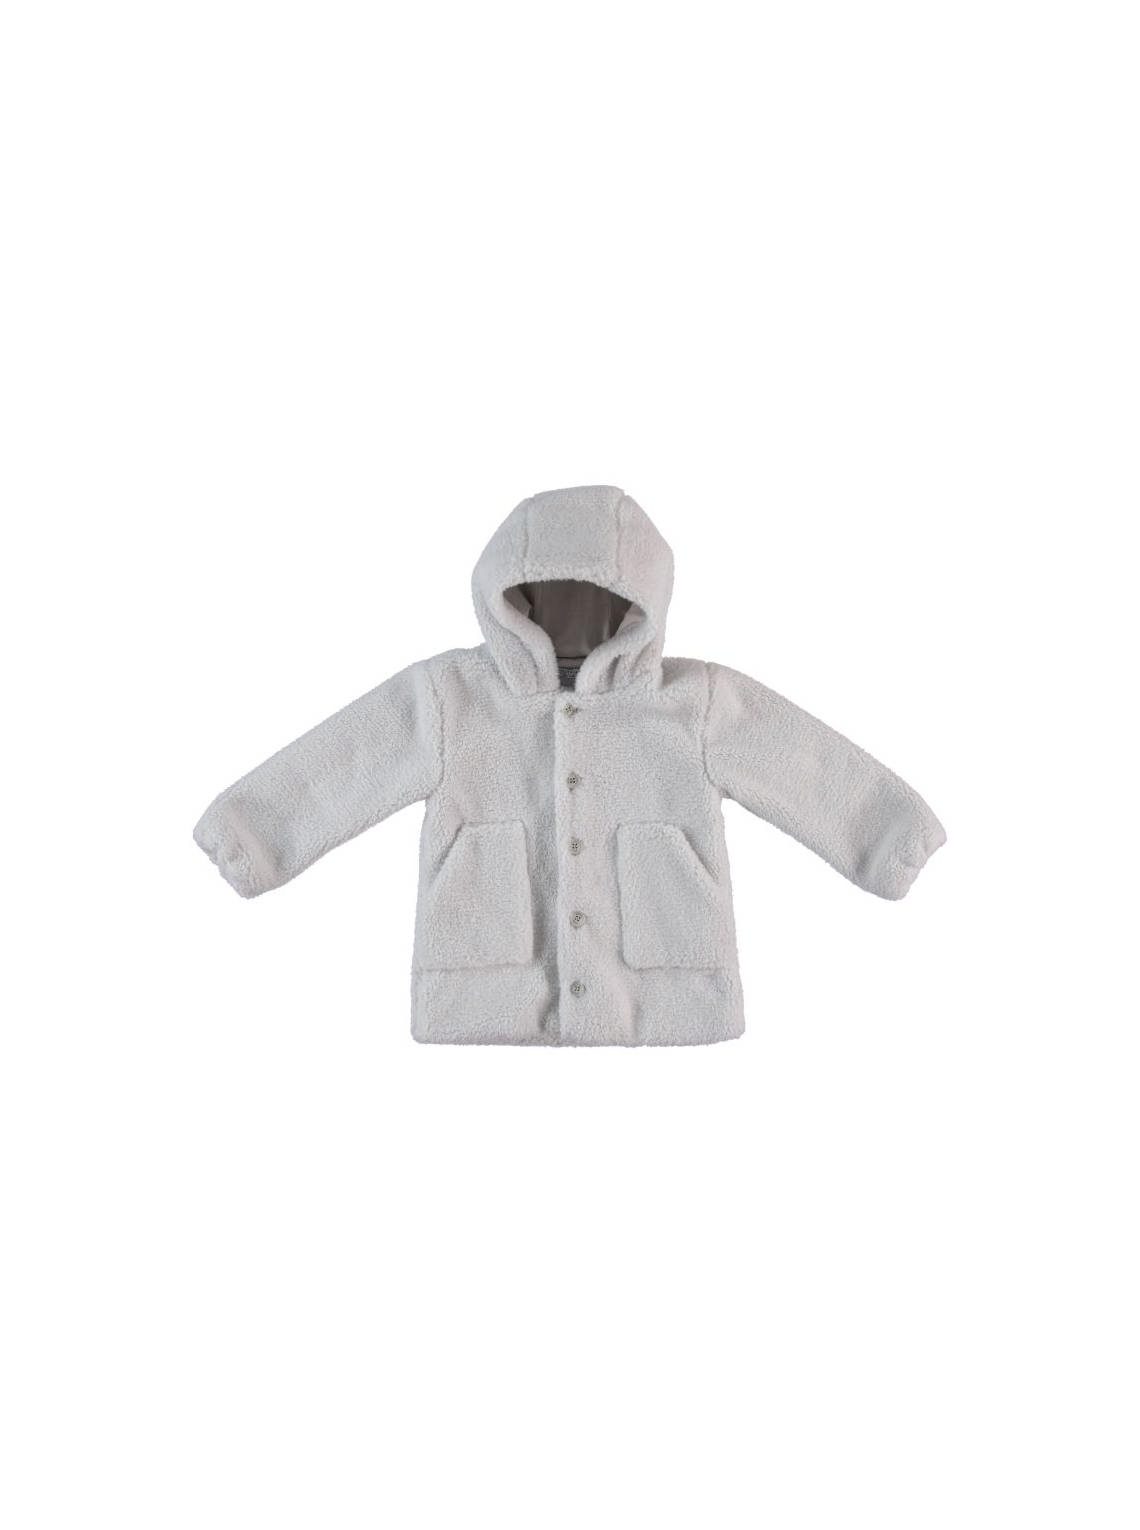 Exclusive Brand - Baby Boy And Boy Coats / 9-24M | 2-6Y | 6-10Y - Kids Fashion Turkey